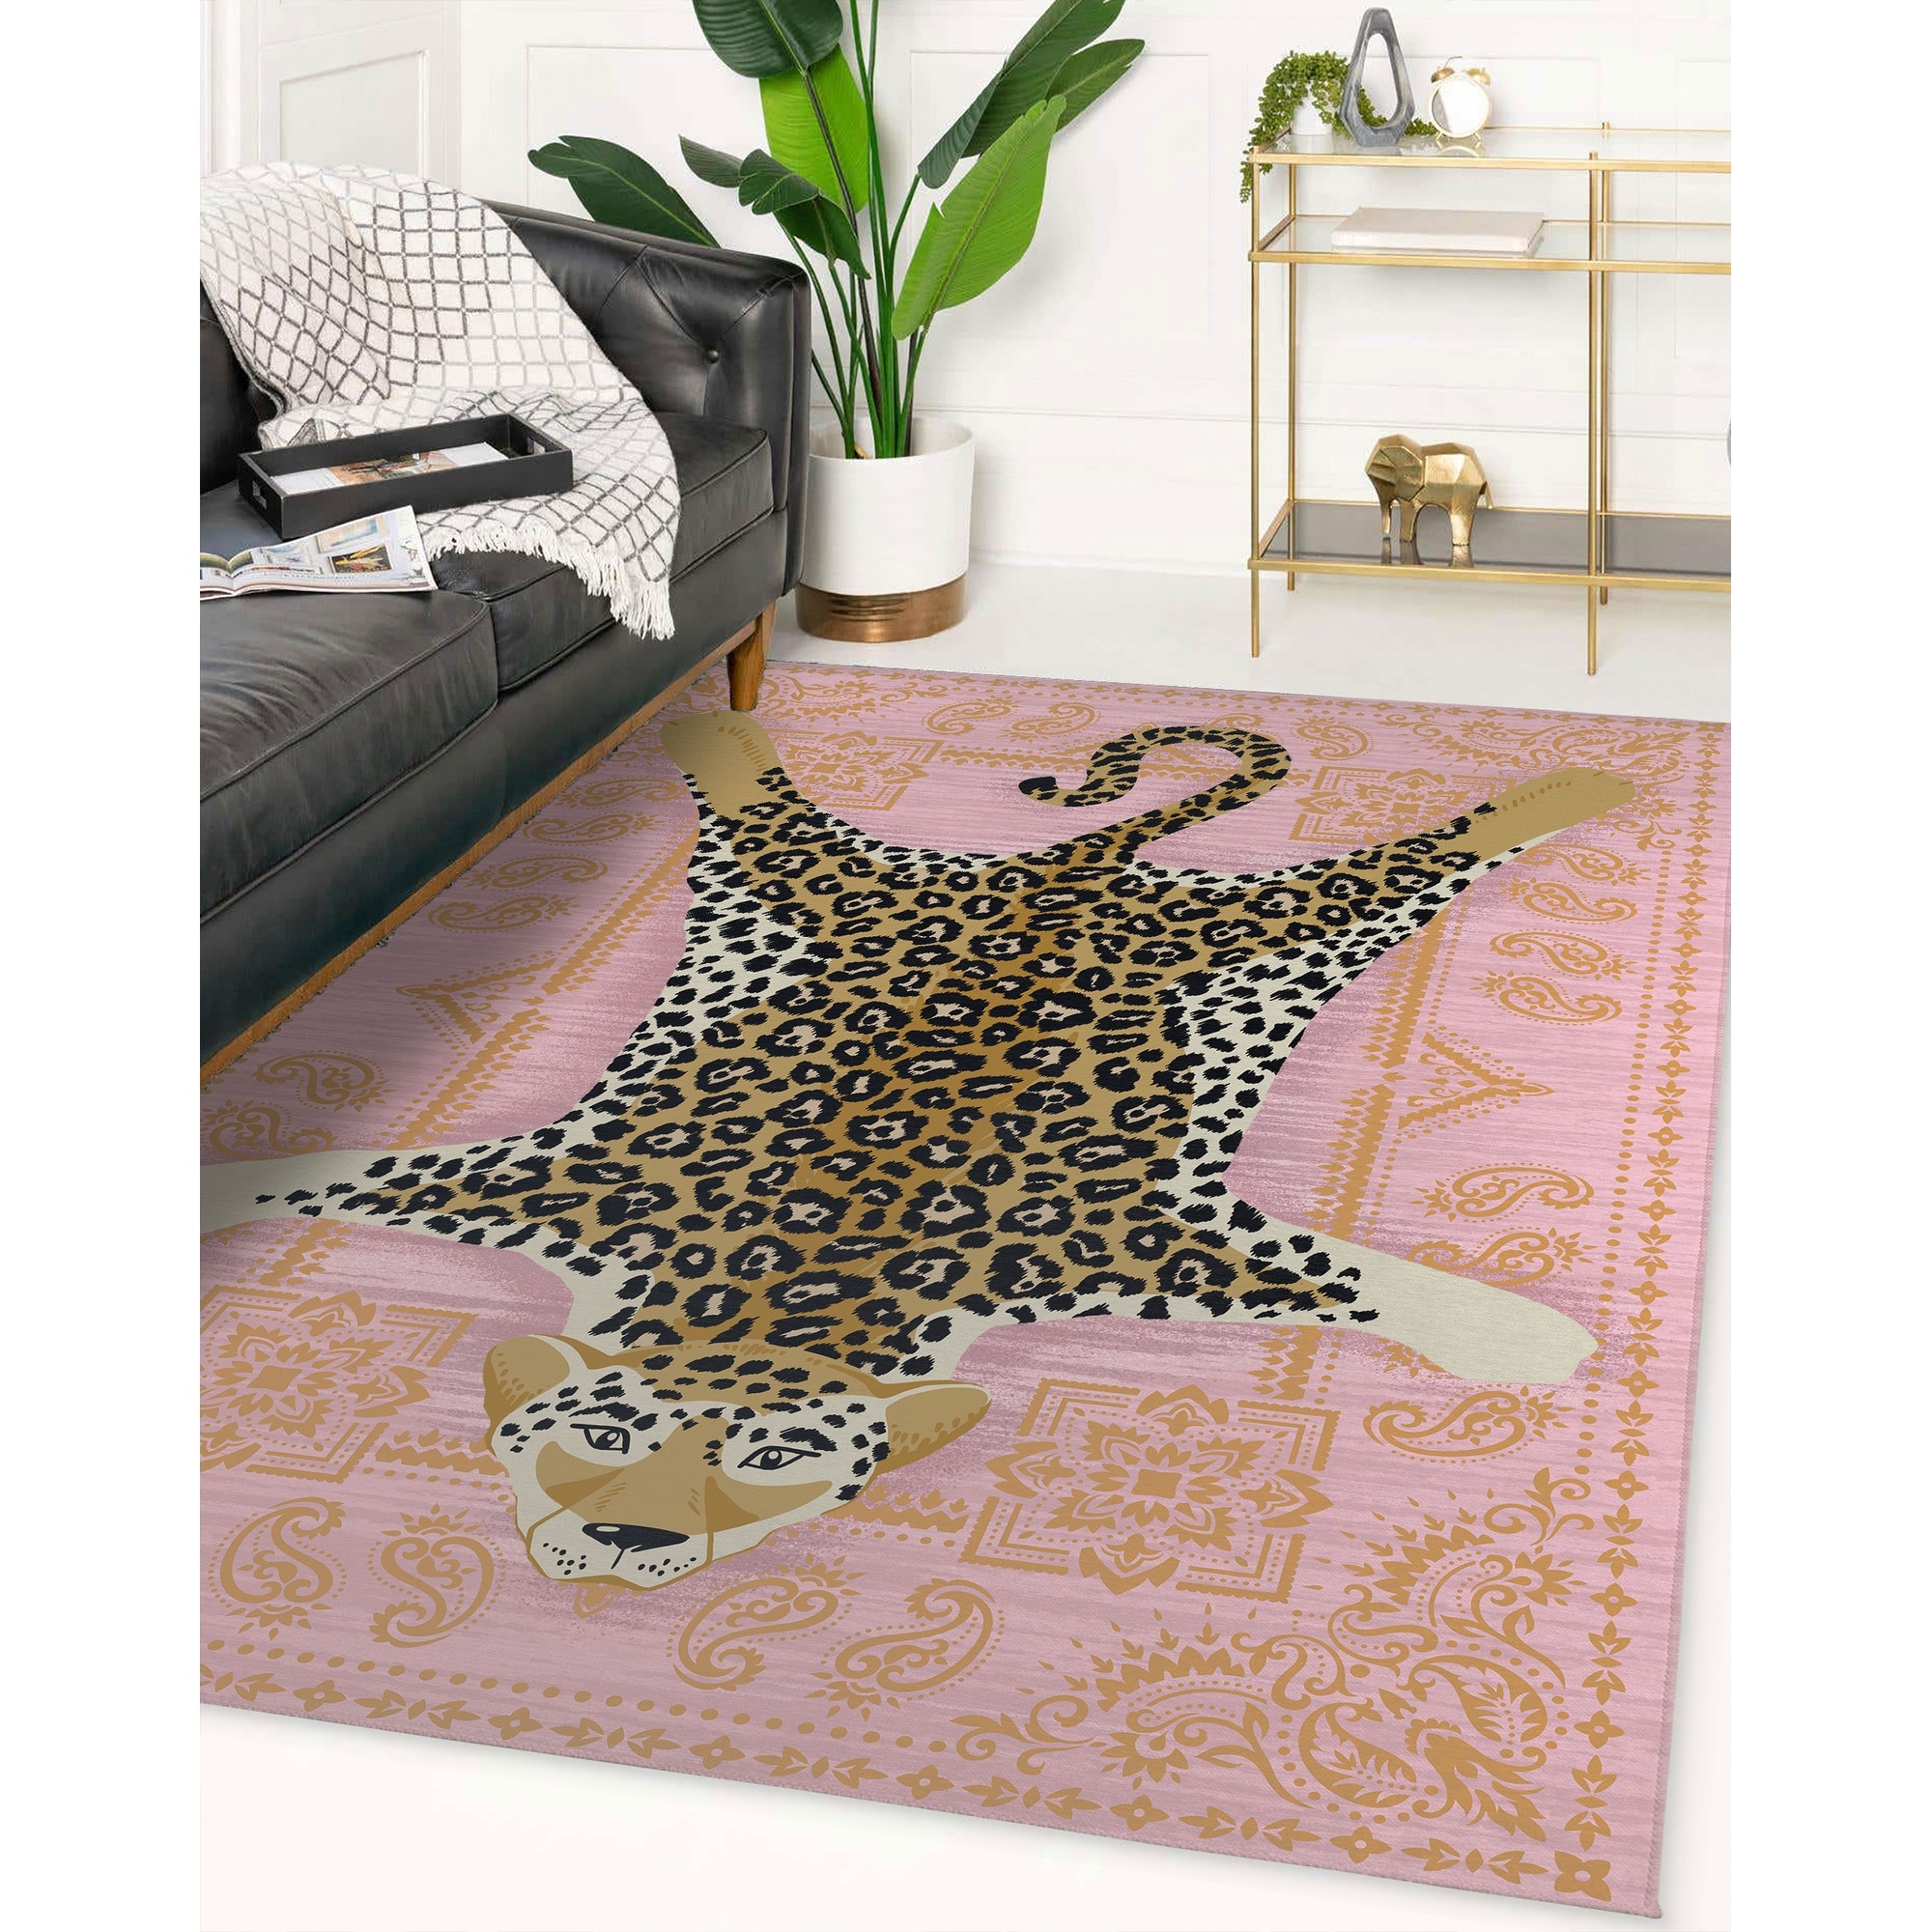 Kitchen Bathroom Mat Rug Doormat  Hot Pink Leopard Print Animal S